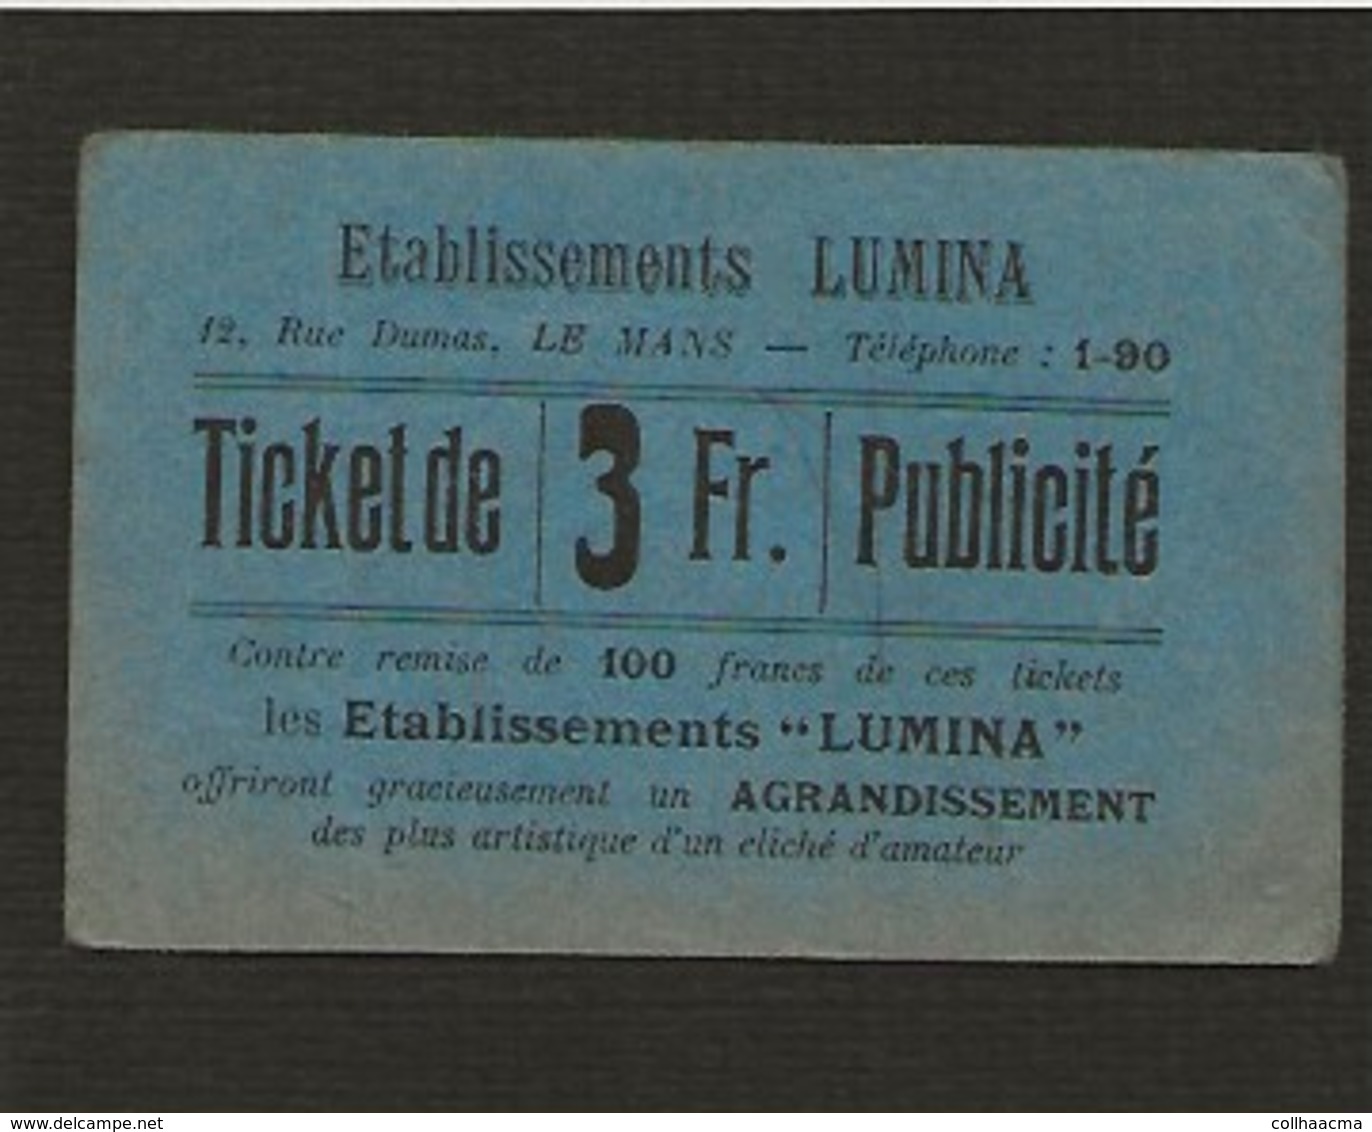 Ticket Publicité Photographie De 3 Fr Contre Remise De 100 Francs De Ces Tickets (photo) / Les Ets "LUMINA" Le Mans - Bons & Nécessité